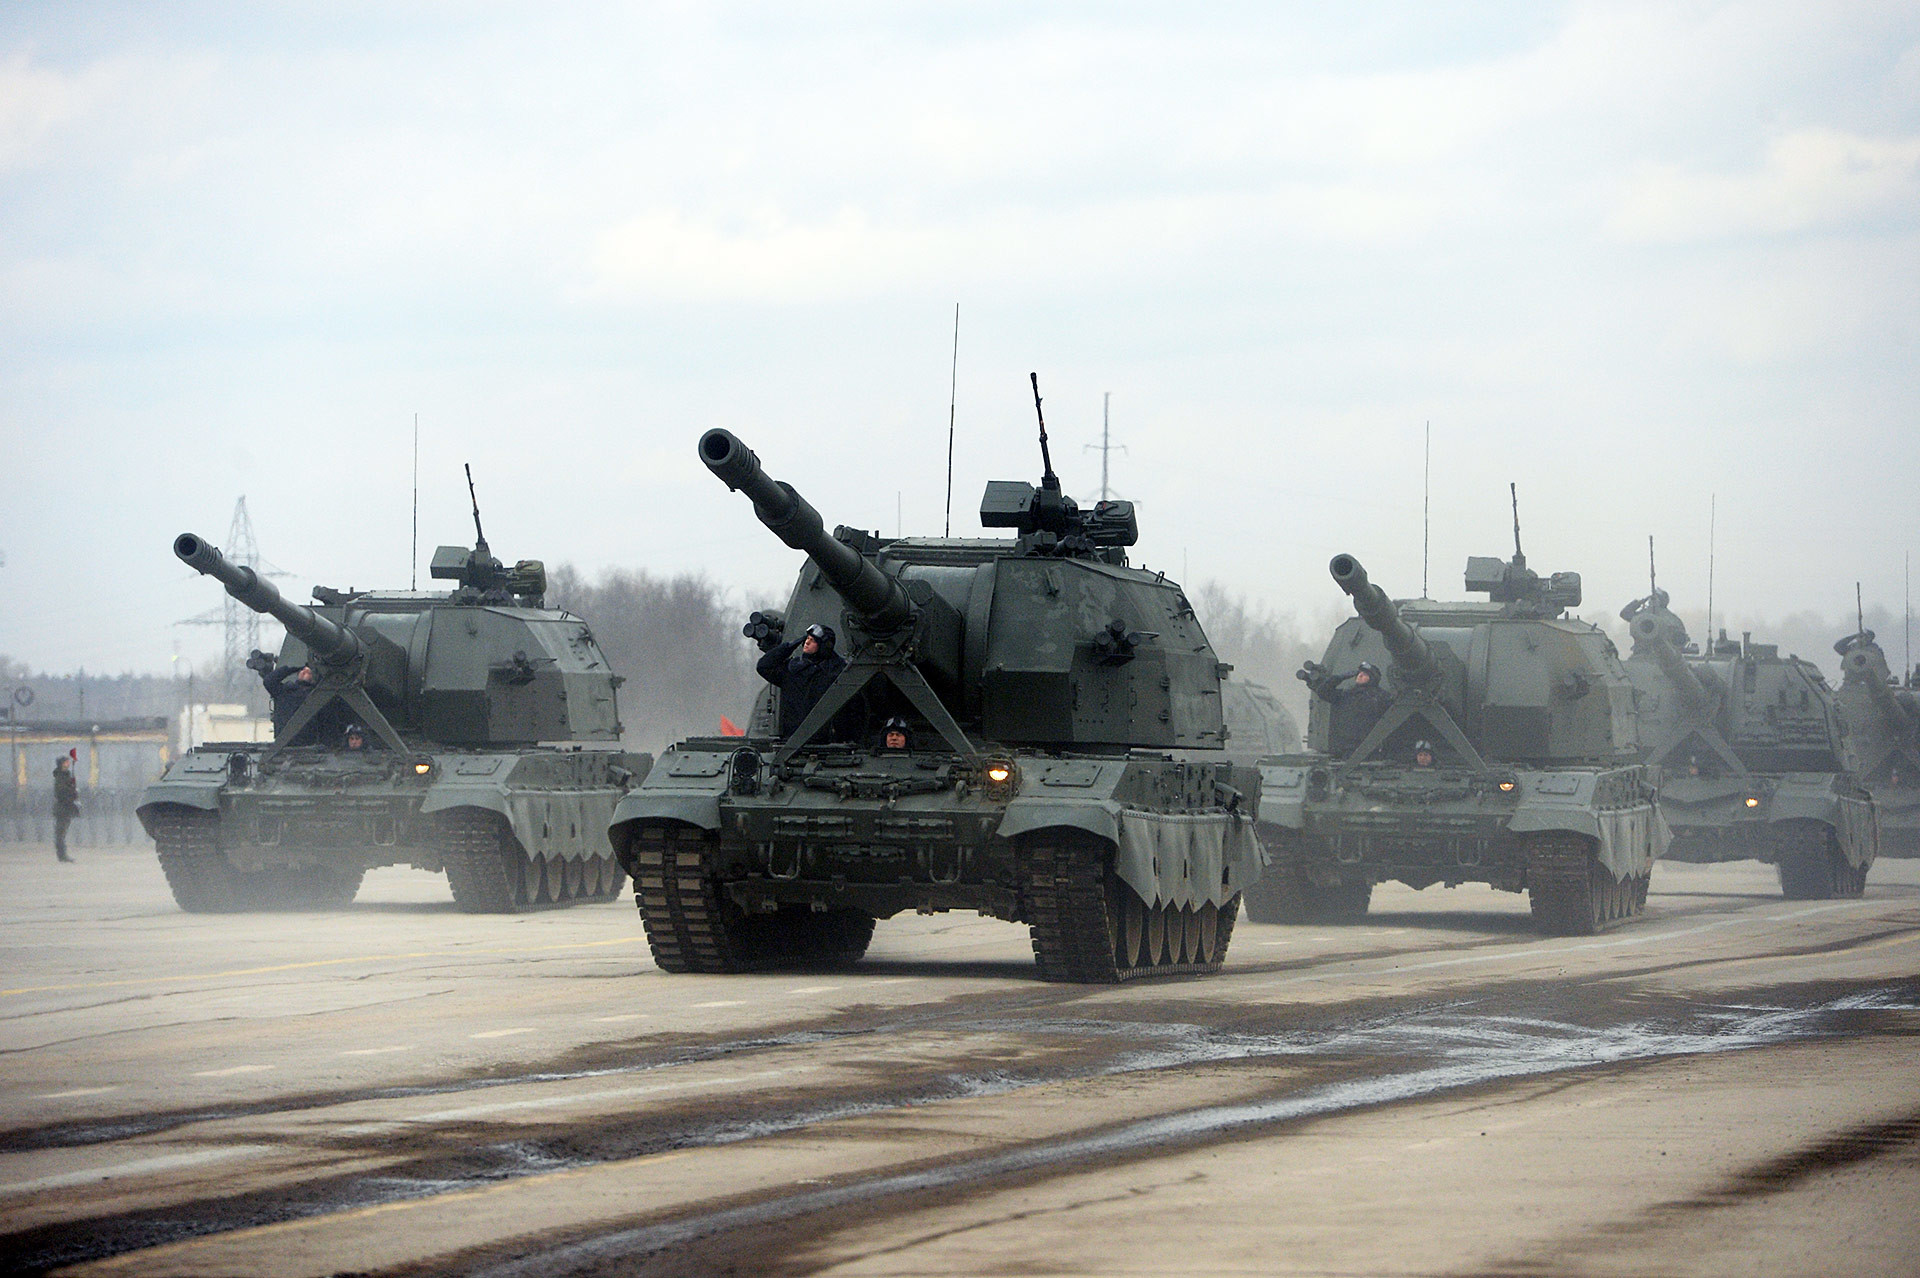 Ρωσικός Στρατός: Ασκήσεις πυροβολικού με πραγματικά πυρά